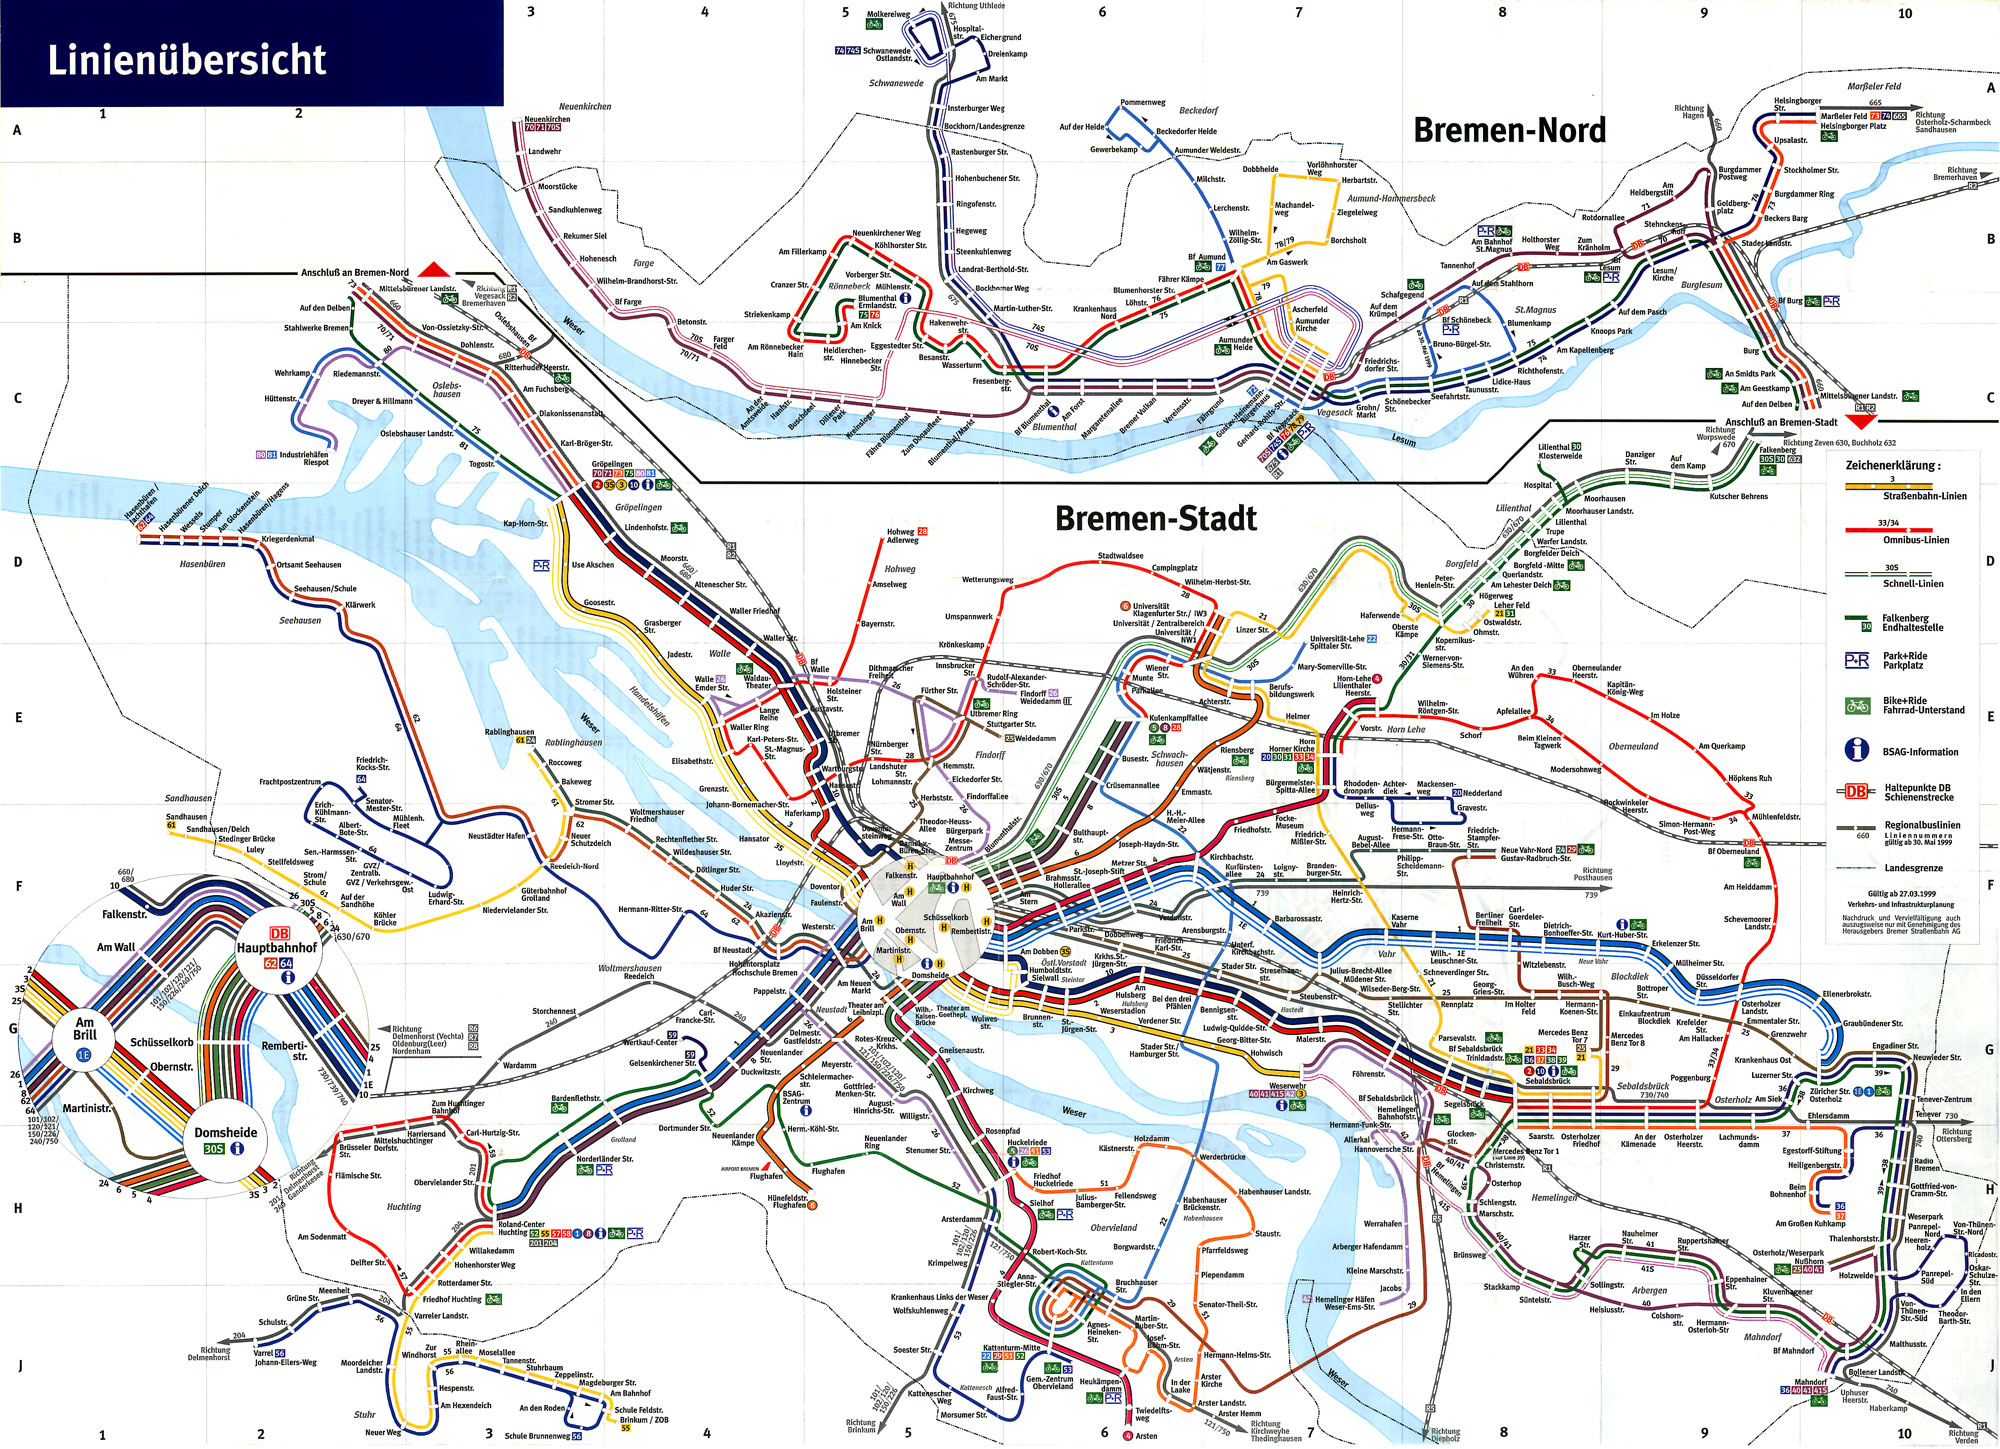 1998: Das Jahr der Netzreform. Die Linie 6 ist zur Universität verlängert worden, die Linie 1 fährt jetzt nach Huchting und die neue Linie 4 von Arsten nach Horn-Lehe.